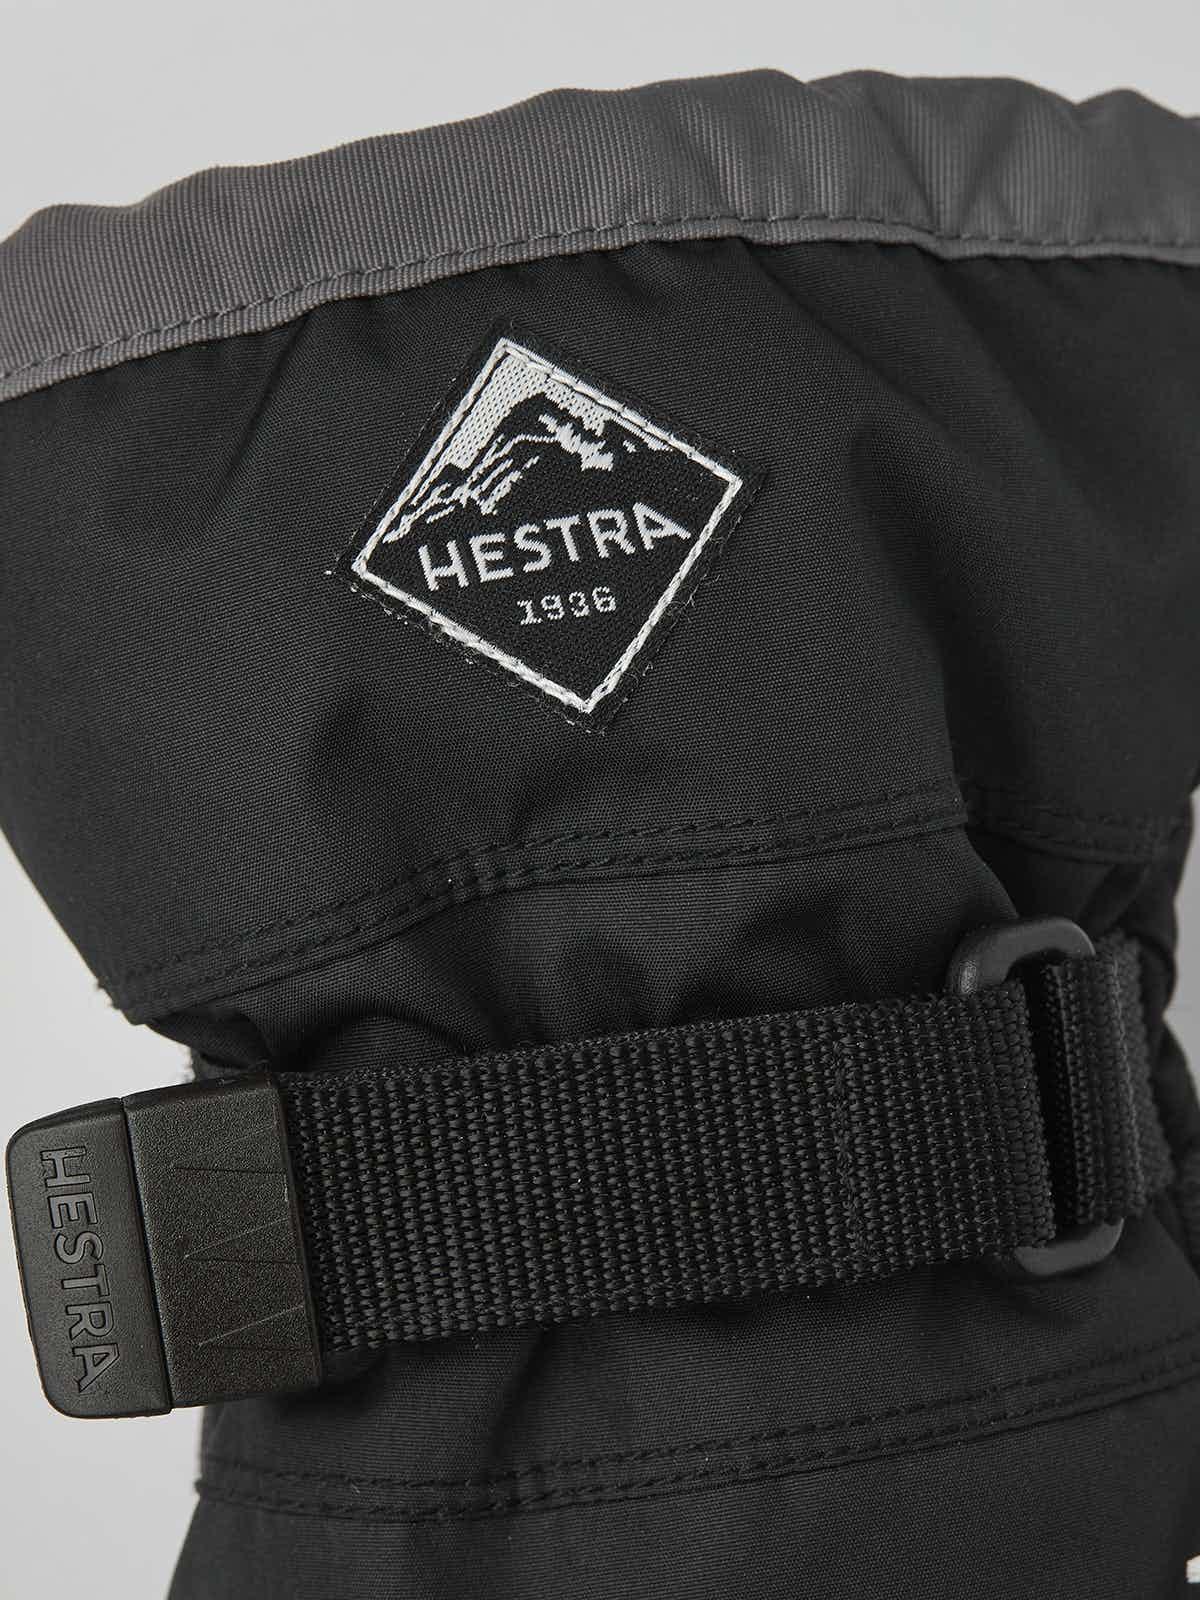 Hestra Gauntlet CZone JR (Handskar) från Hestra. | TacNGear - Utrustning för polis och militär och outdoor.